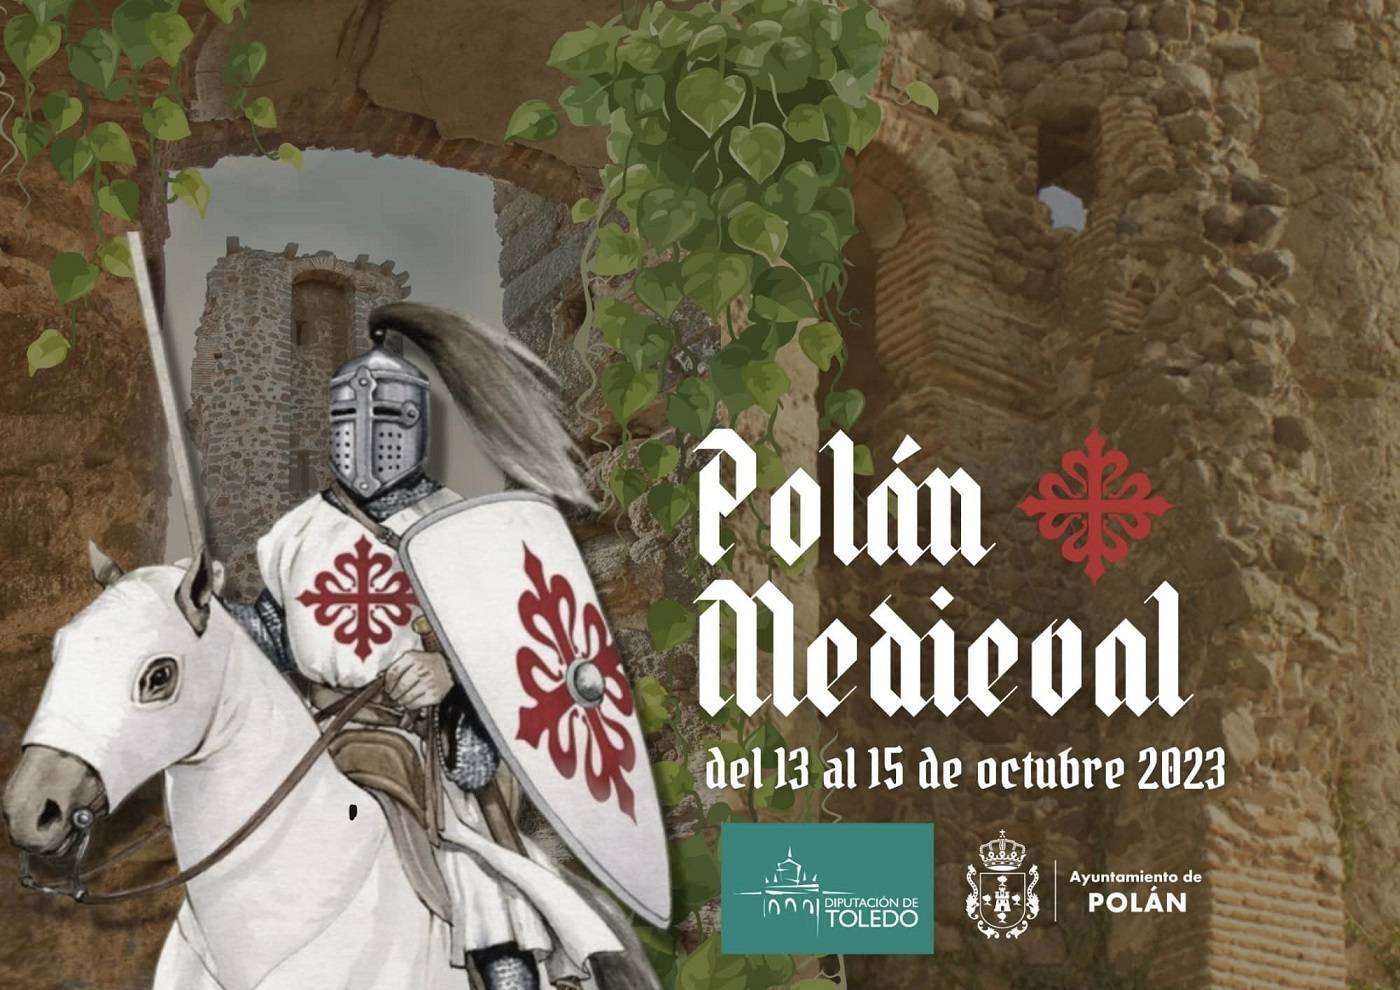 Polán Medieval (2023) - Polán (Toledo) 1